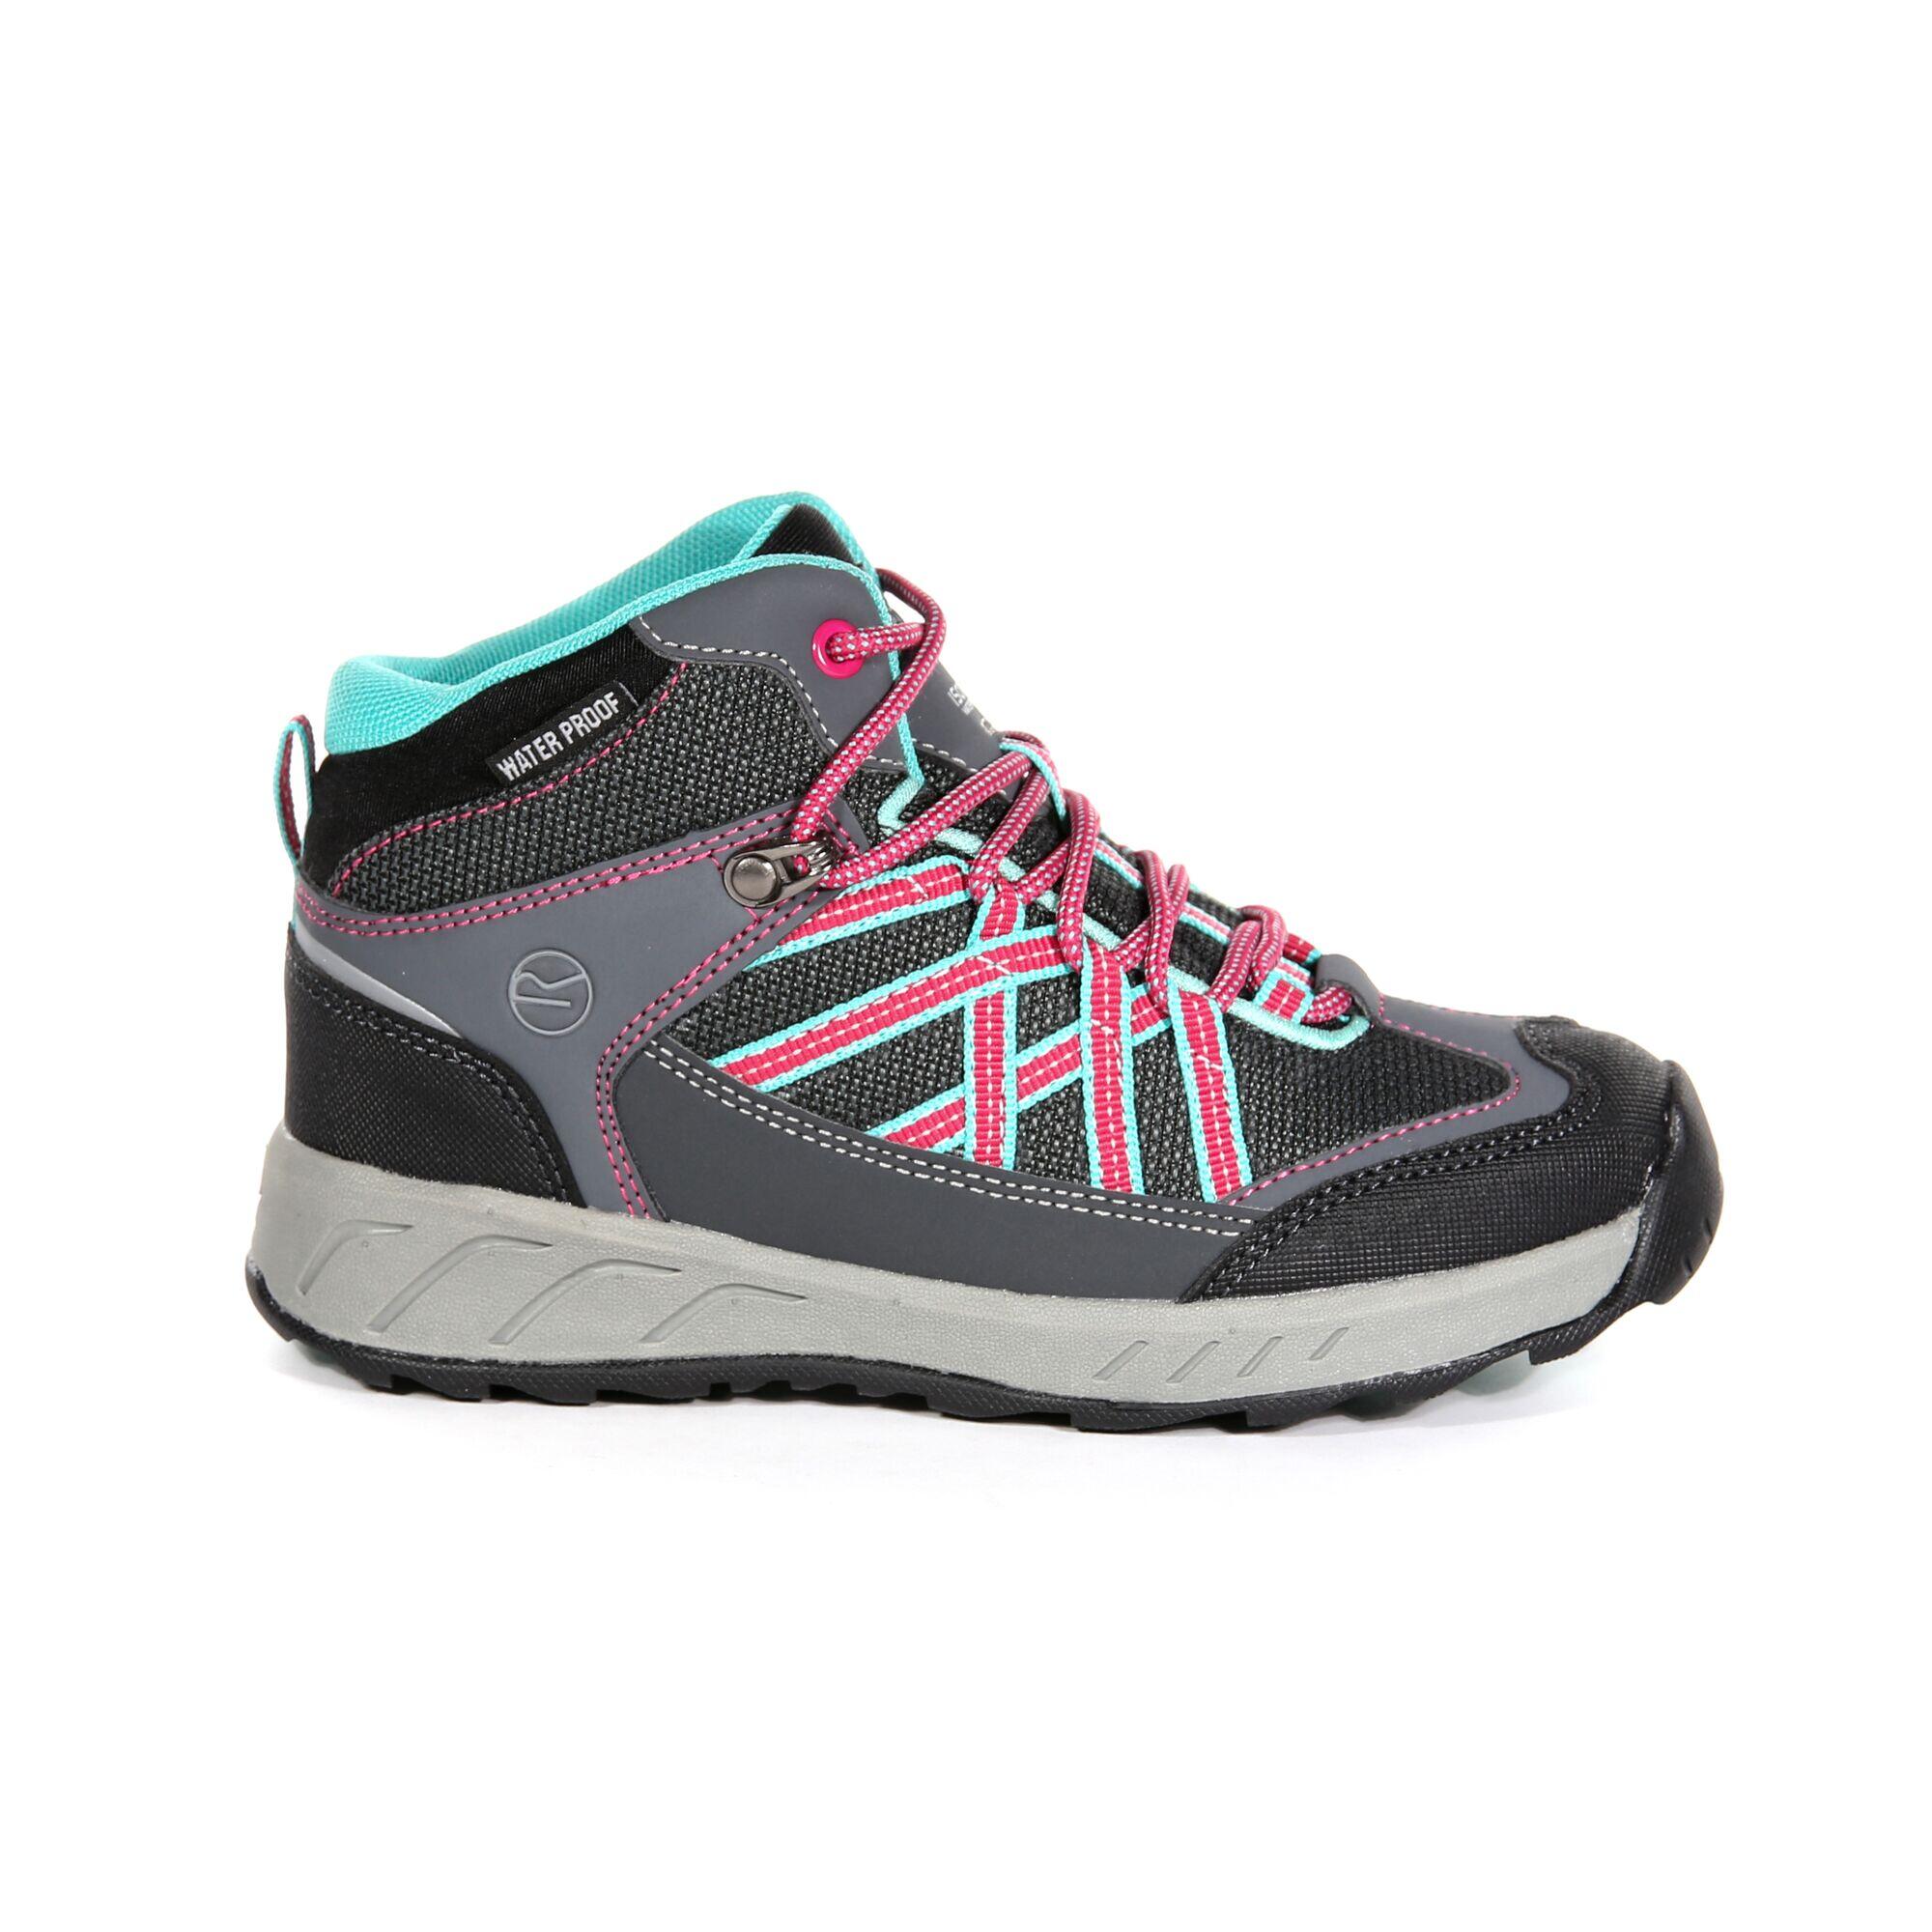 REGATTA Samaris Kids' Hiking Waterproof Mid Boots - Light Grey/Pink